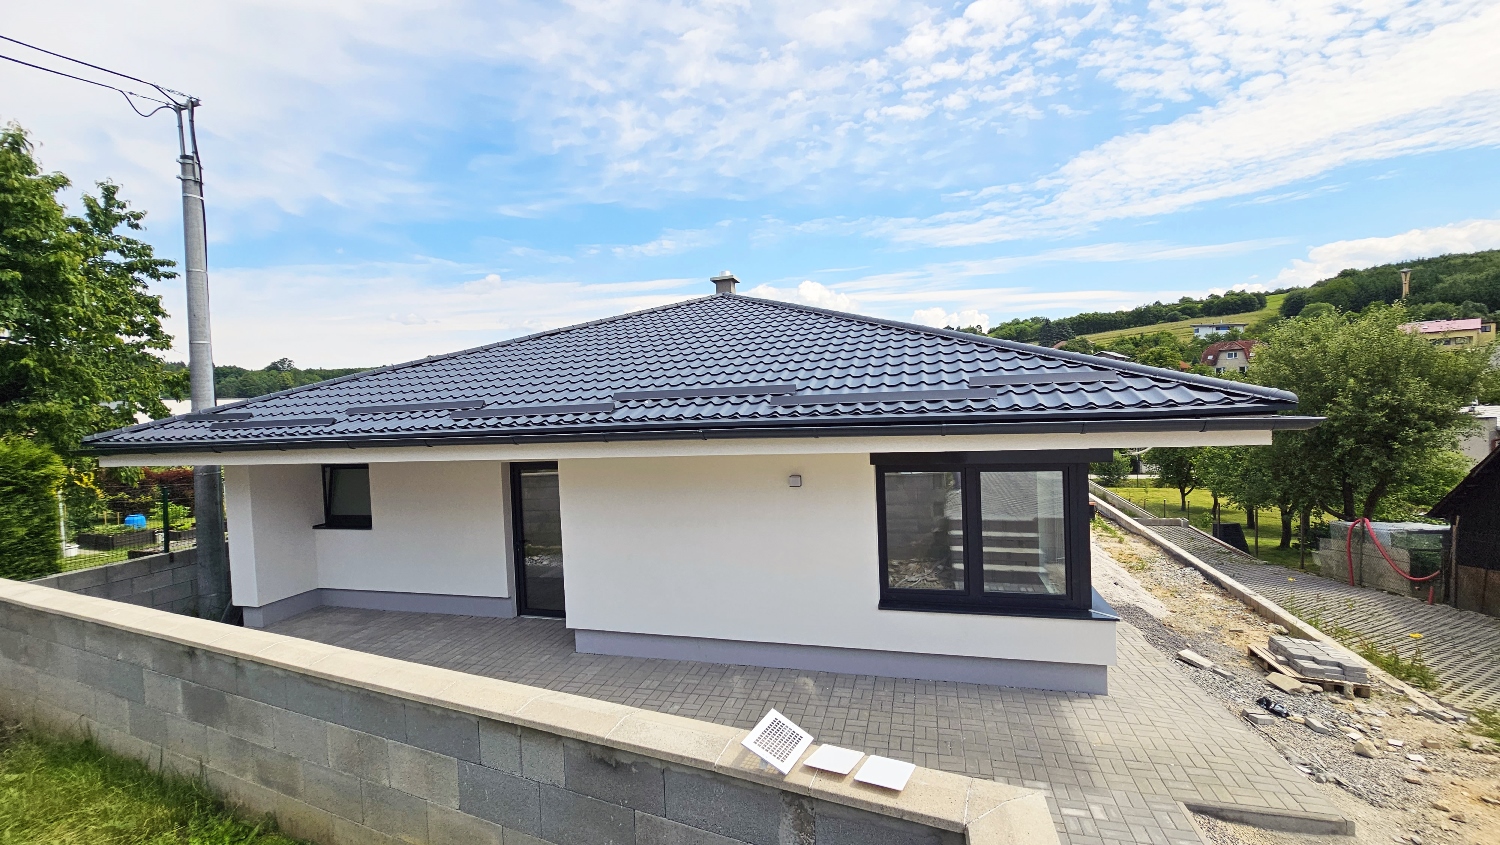 EXKLUZÍVNE! Nový zariadený 4-izbový rodinný dom, terasa, výhľady, predaj, Žilina - Trnové, Cena: 354.900 €